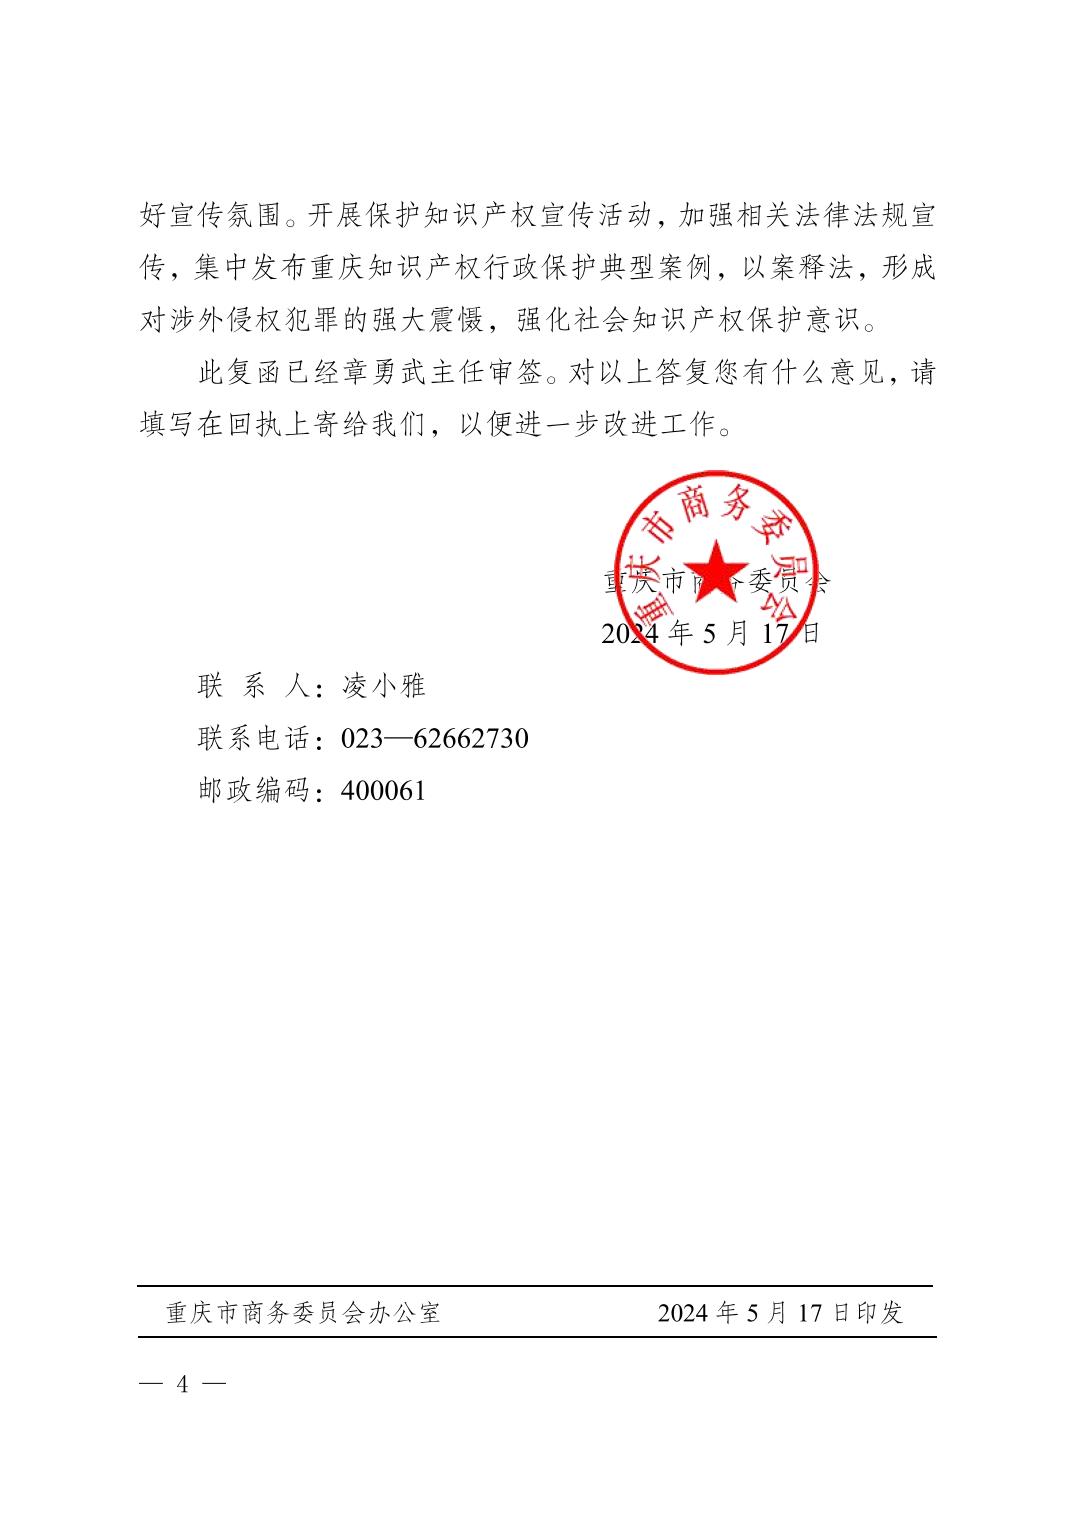 重庆市商务委员会关于市政协第六届第二次会议第0654号提案的答复函